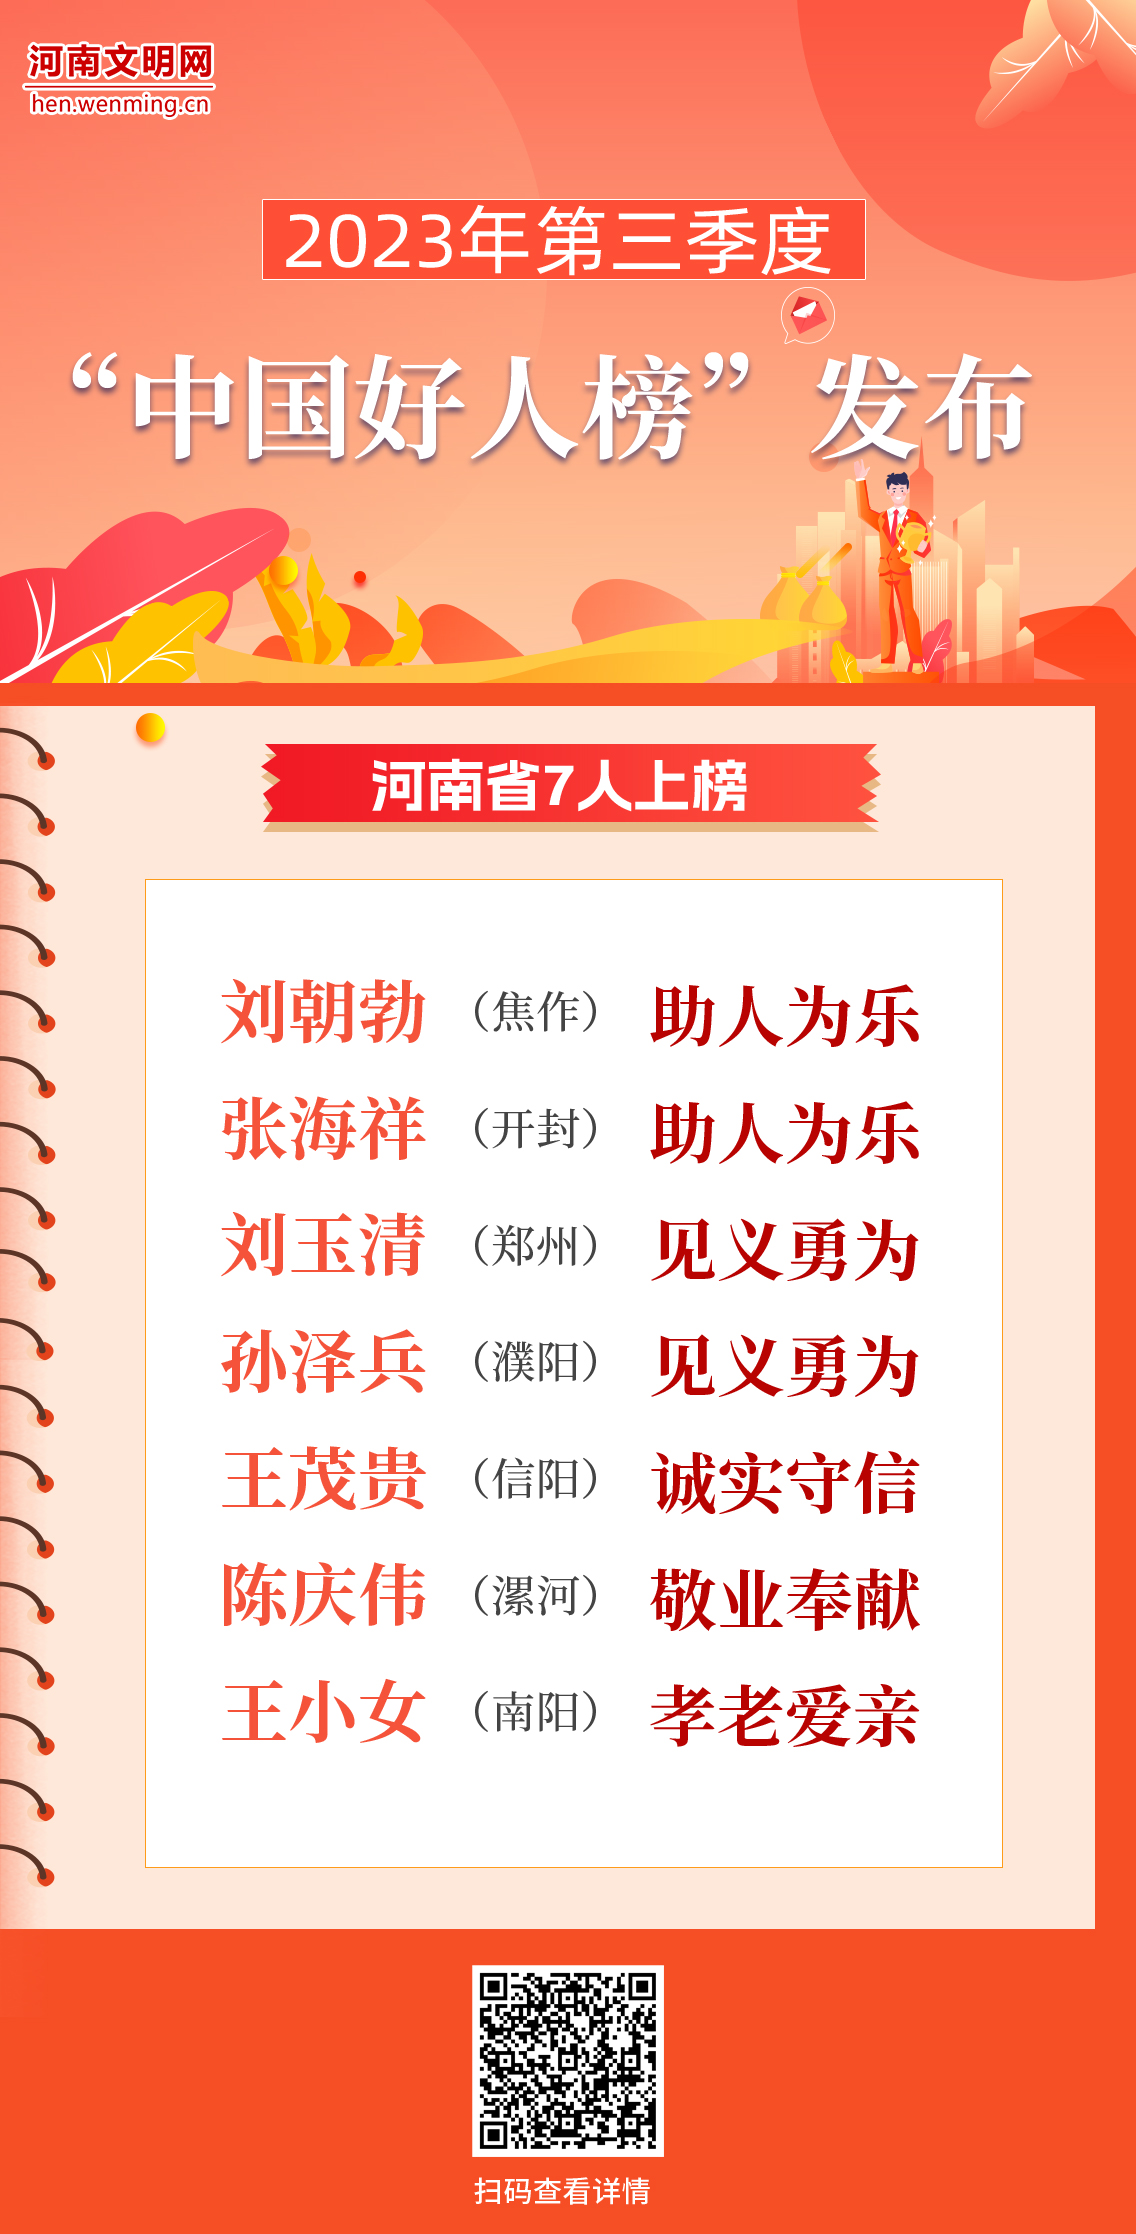 2023年第三季度“中国好人榜”发布 河南7人上榜